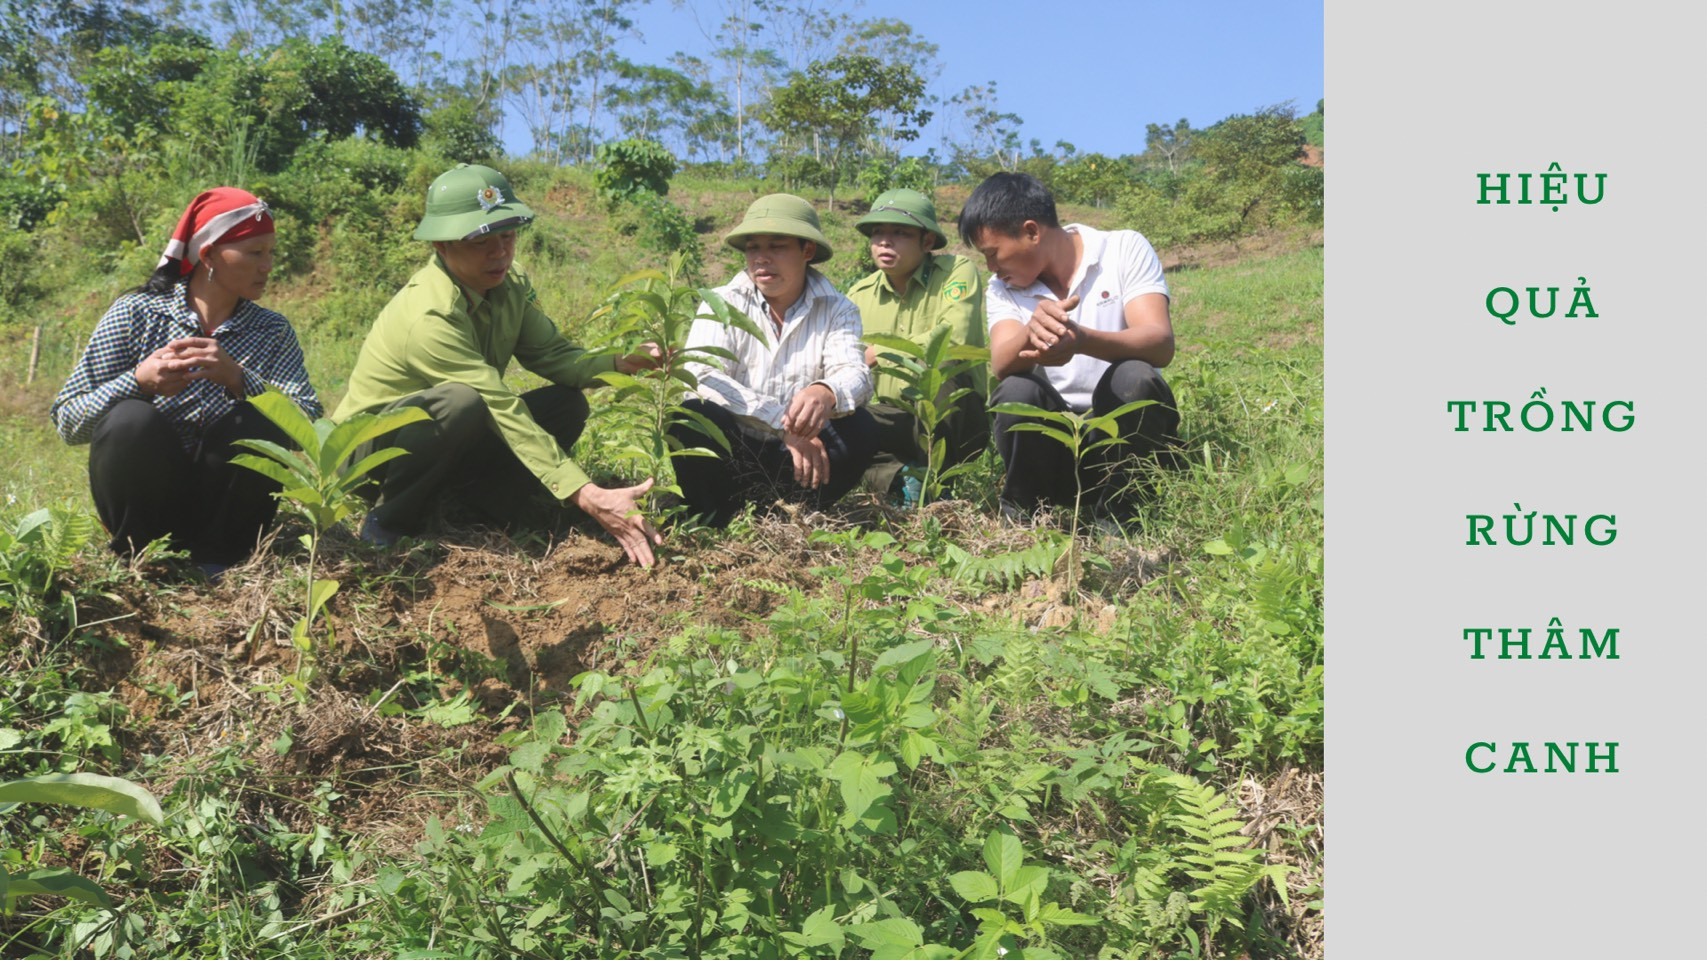 Lào Cai: Hiệu quả trồng rừng thâm canh - Tạp chí điện tử Bảo vệ ...